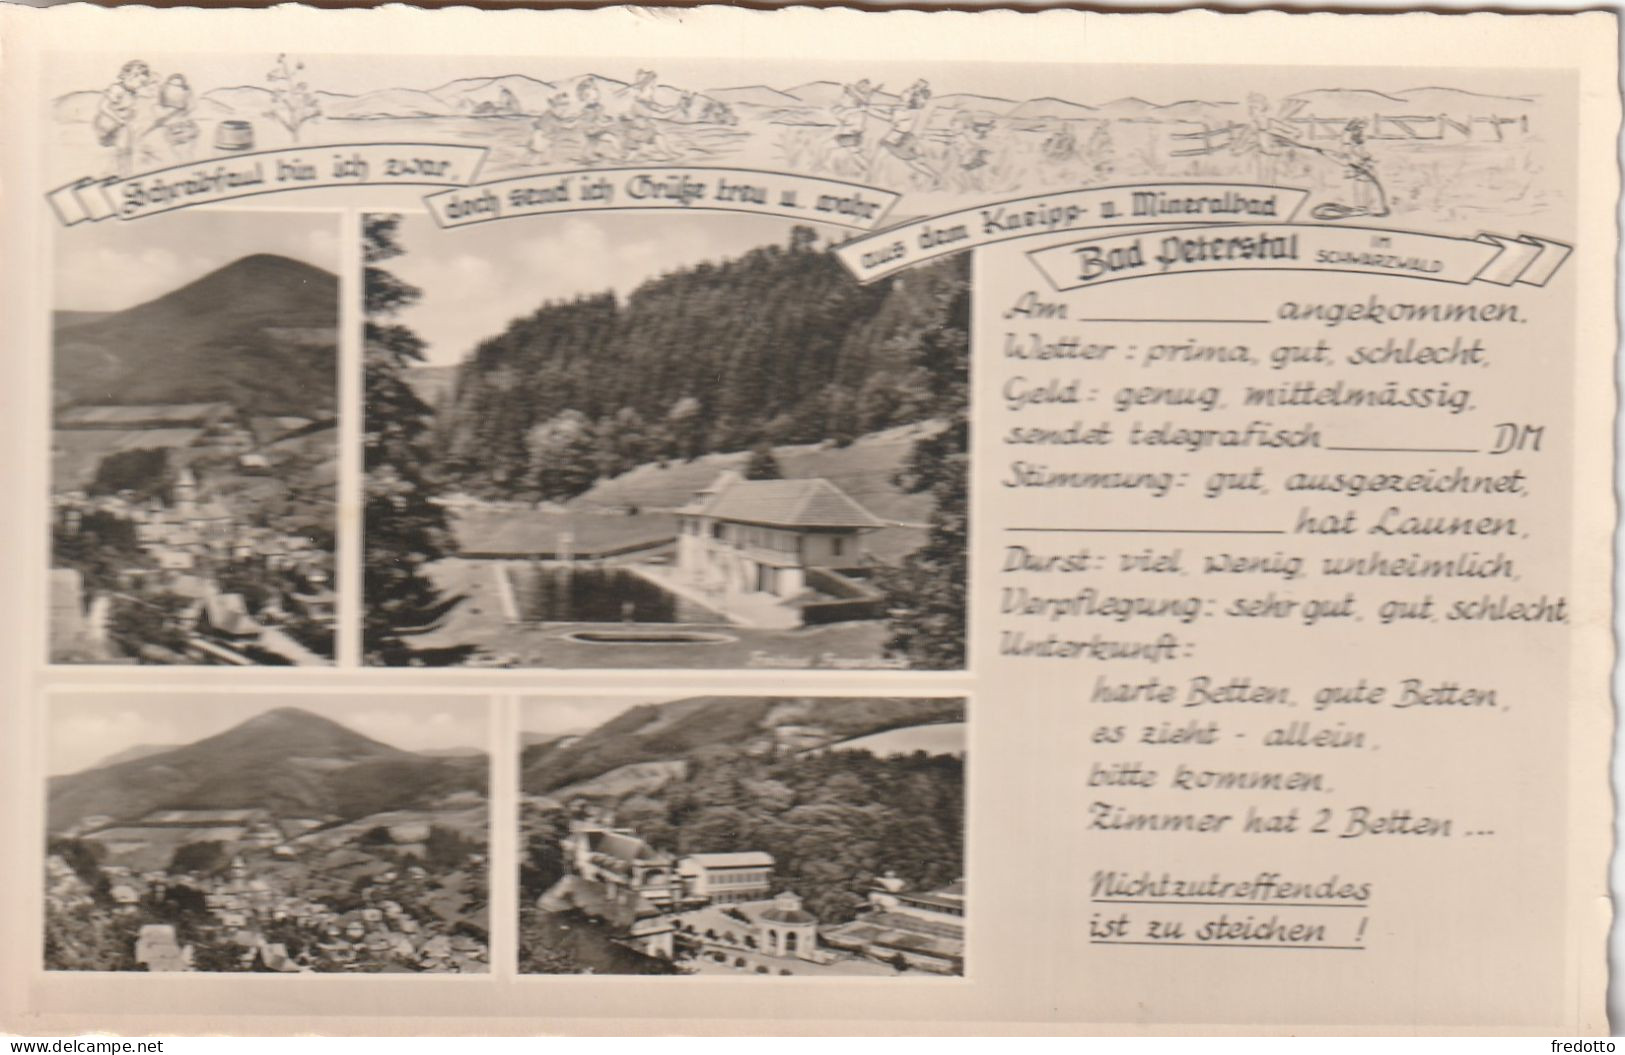 Bad Peterstal - Agfa-Originalfoto-Karte - Bad Peterstal-Griesbach